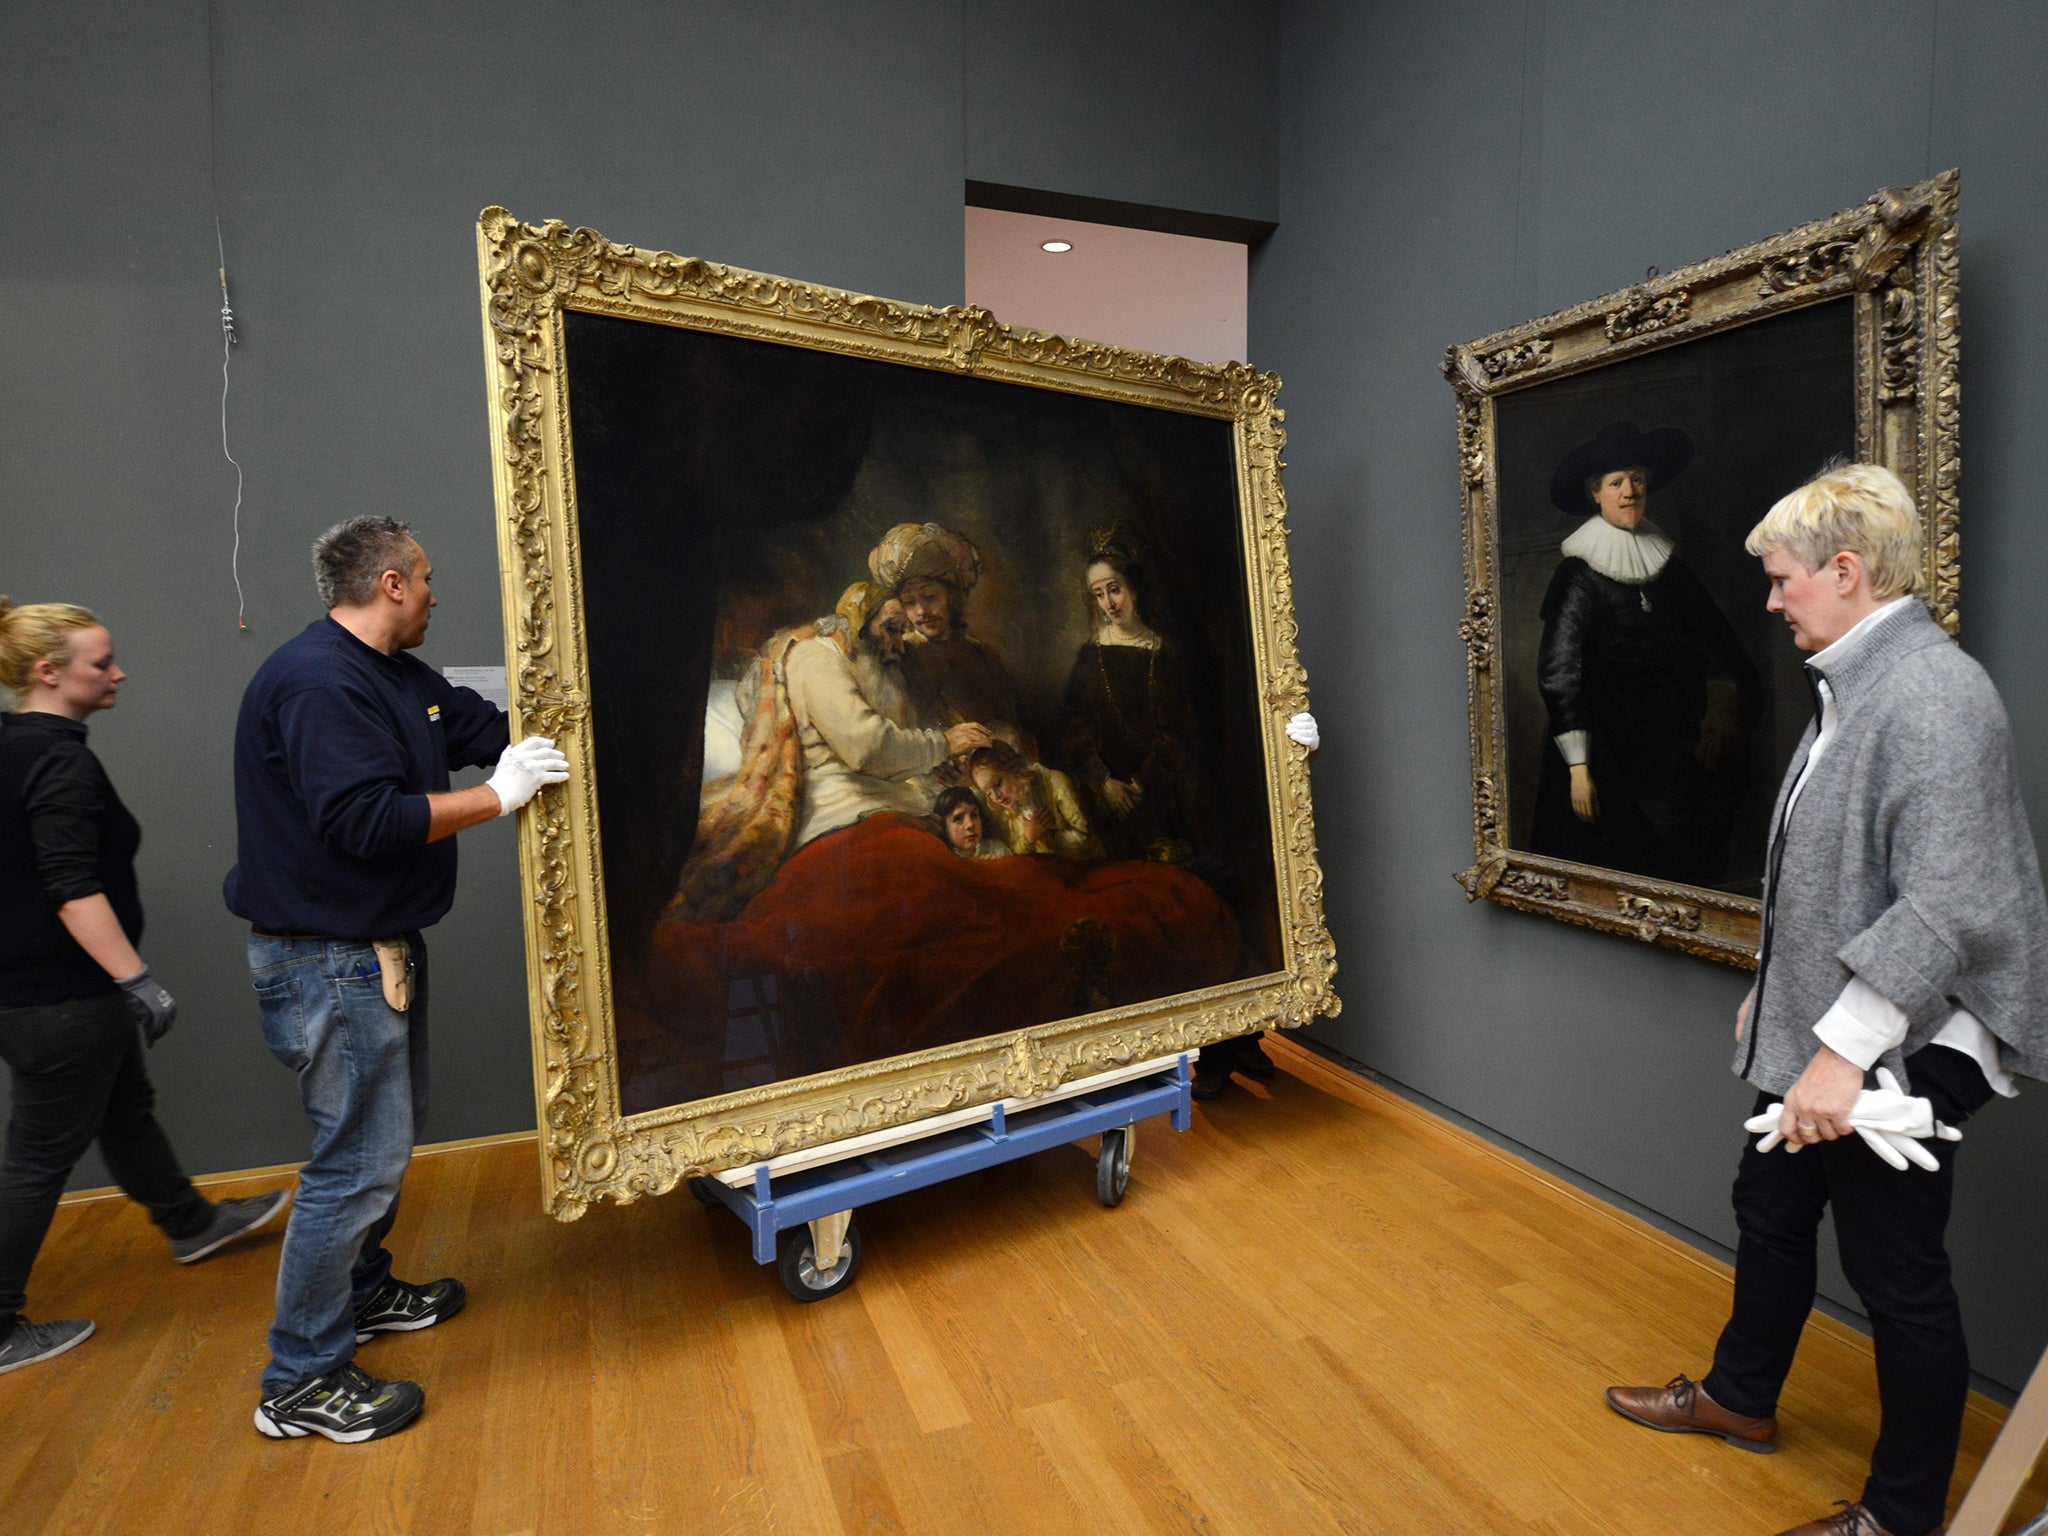 'Jakobssegen' by Dutch artist Rembrandt van Rijn is being transported from the Museum Schloss Wilhelmshoehe in Kassel, Hesse, Germany